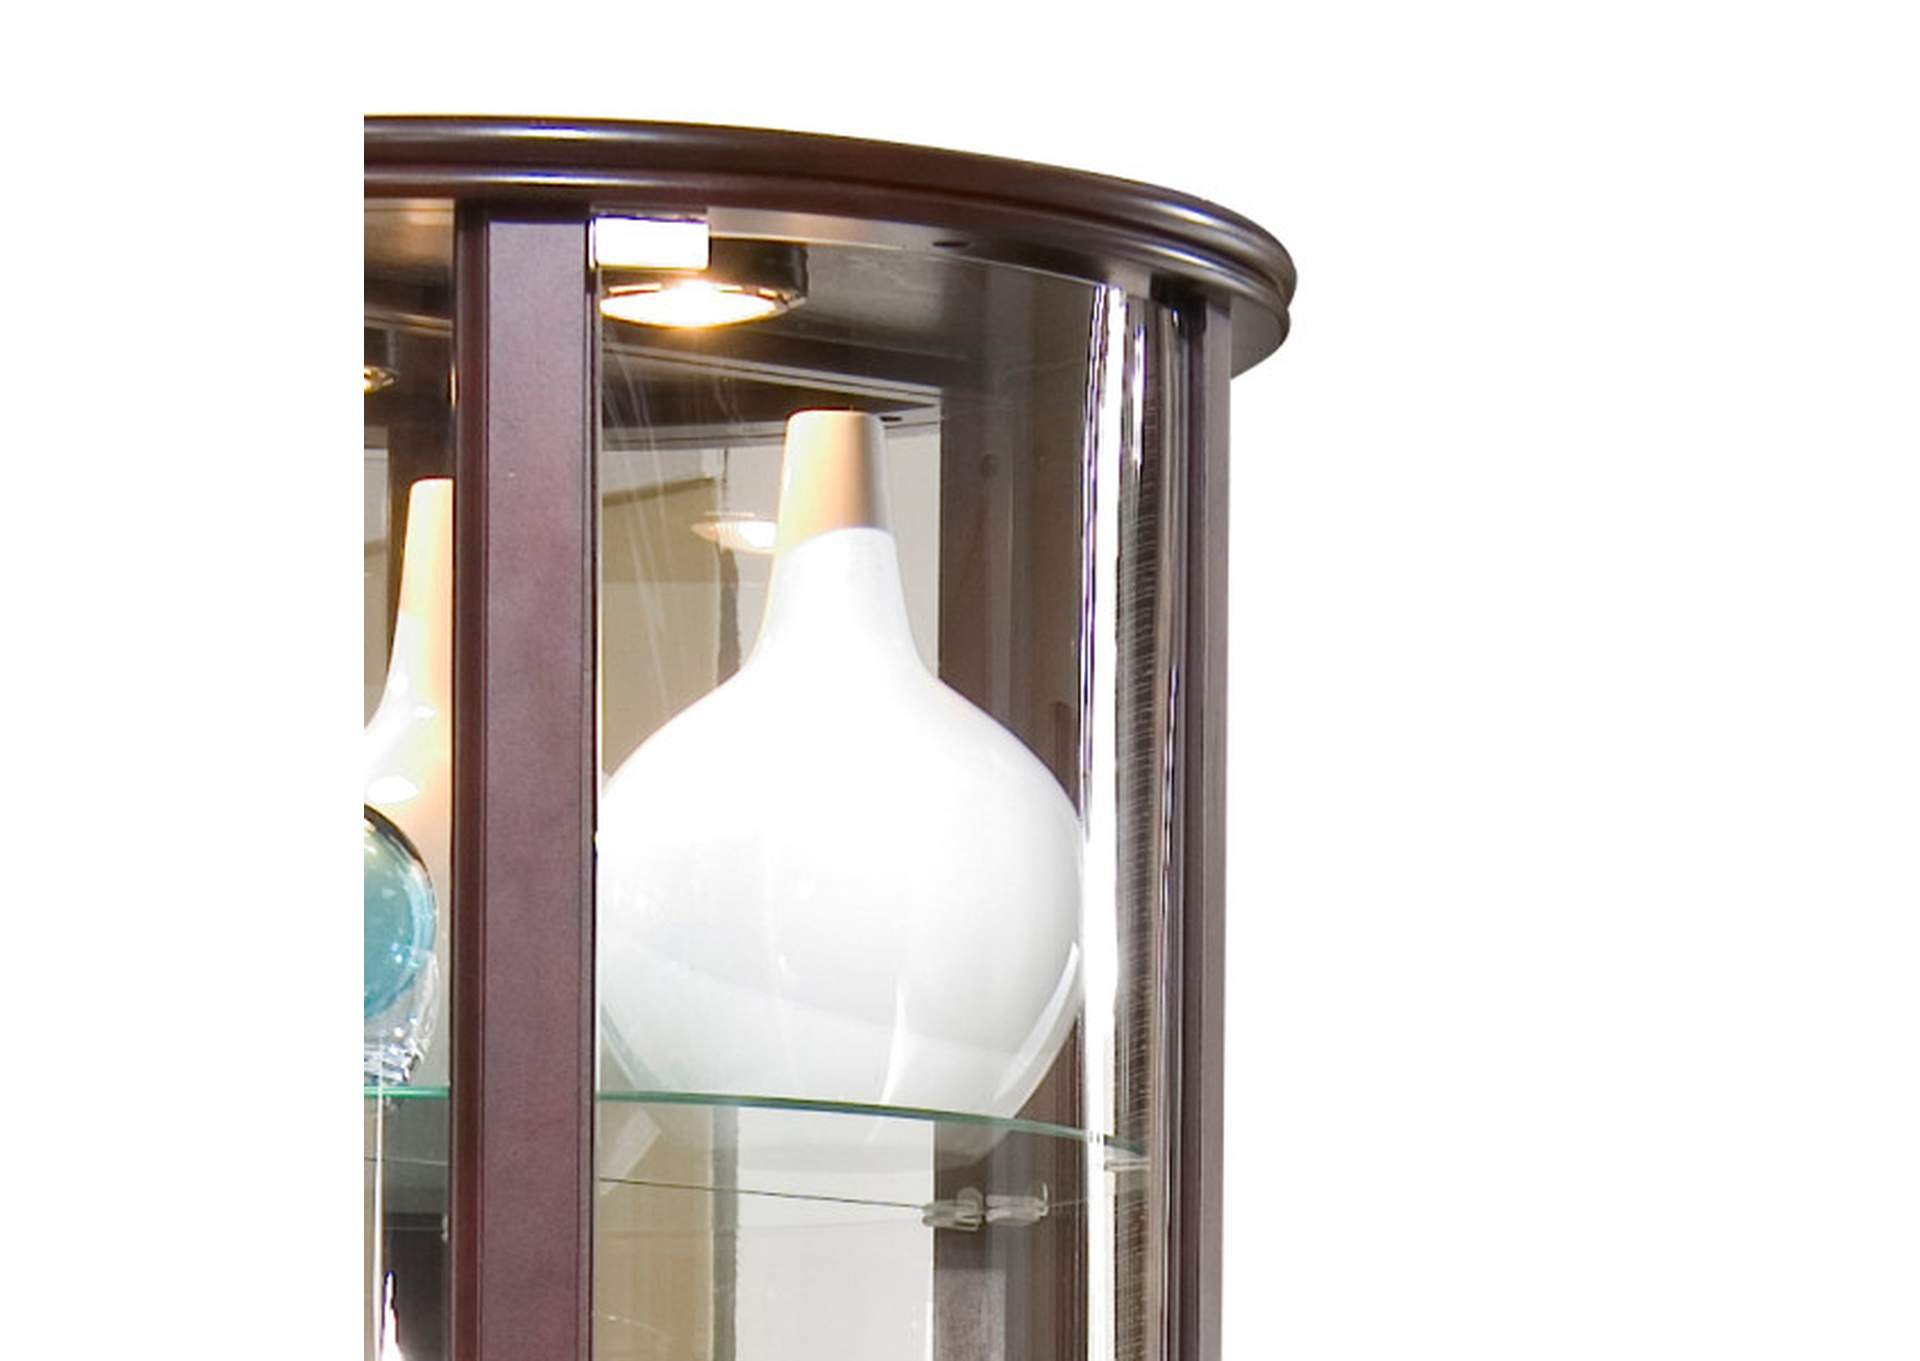 Mirrored Half Round 5 Shelf Curio Cabinet in Cherry Brown,Pulaski Furniture